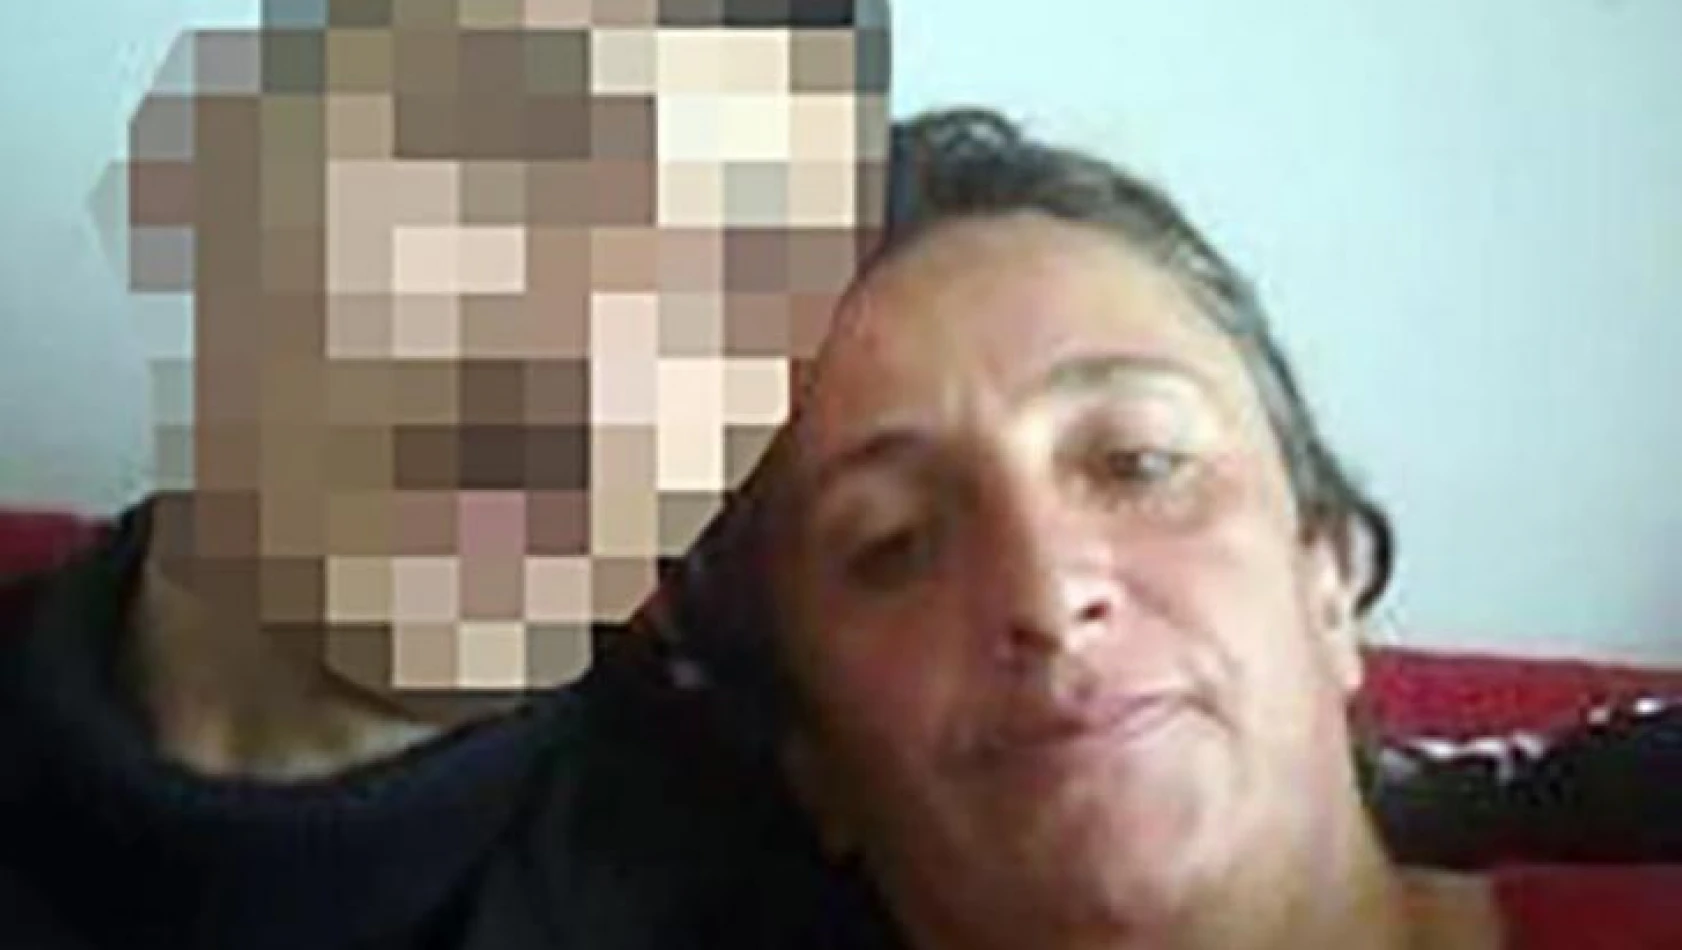 Yalnız yaşayan kadın 9 yerinden bıçaklanarak öldürüldü